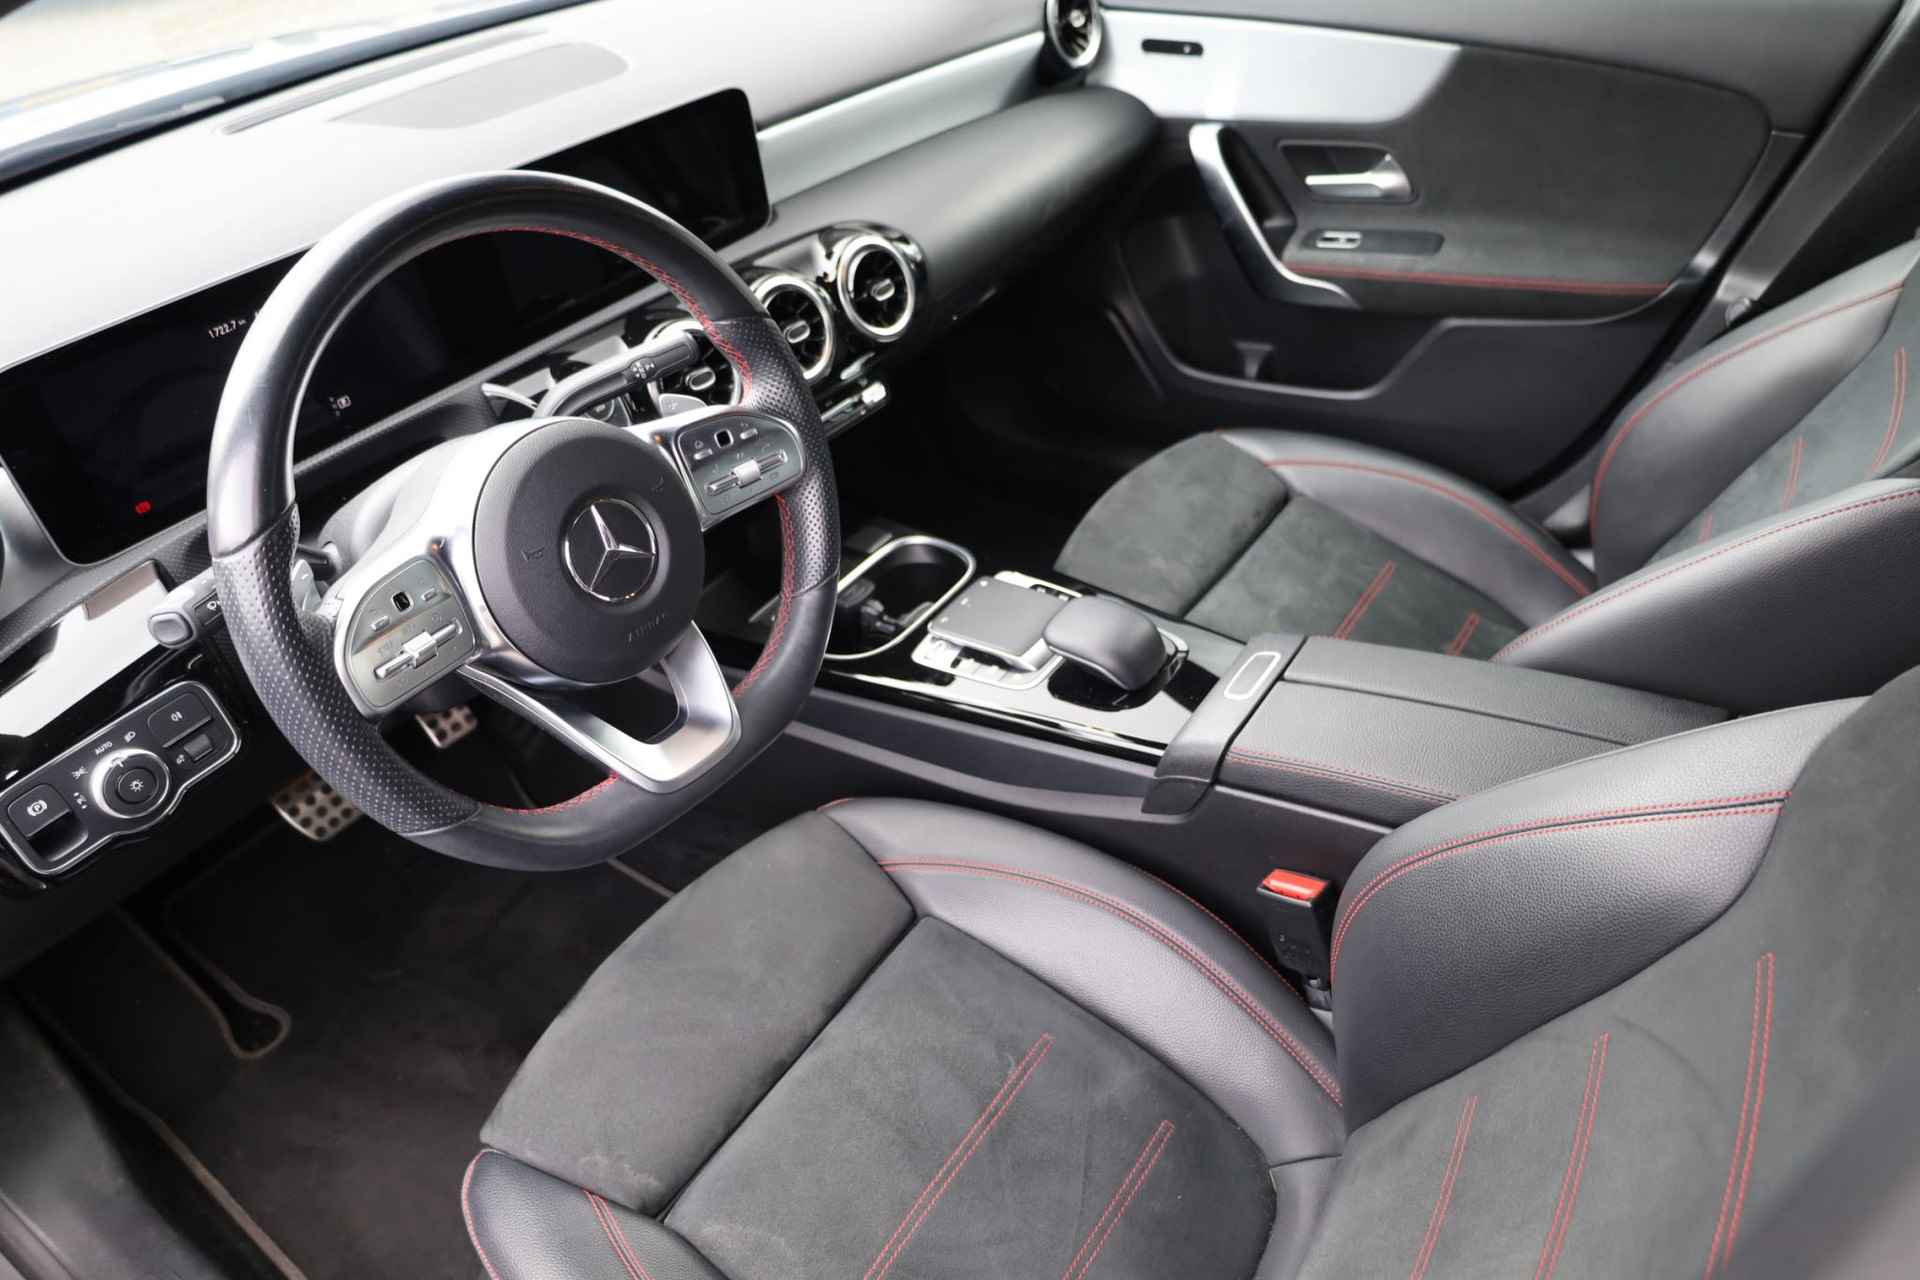 Mercedes-Benz A-klasse 200 Business Solution AMG 120KW/163PK automaat, Leder / alcantara, winterset LMV digitaal dashboard, navigatie, LED verlichting voor en achter, 18" LMV, stoelverwarming, parkeersensoren voor en achter, AMG bumpers - 10/44